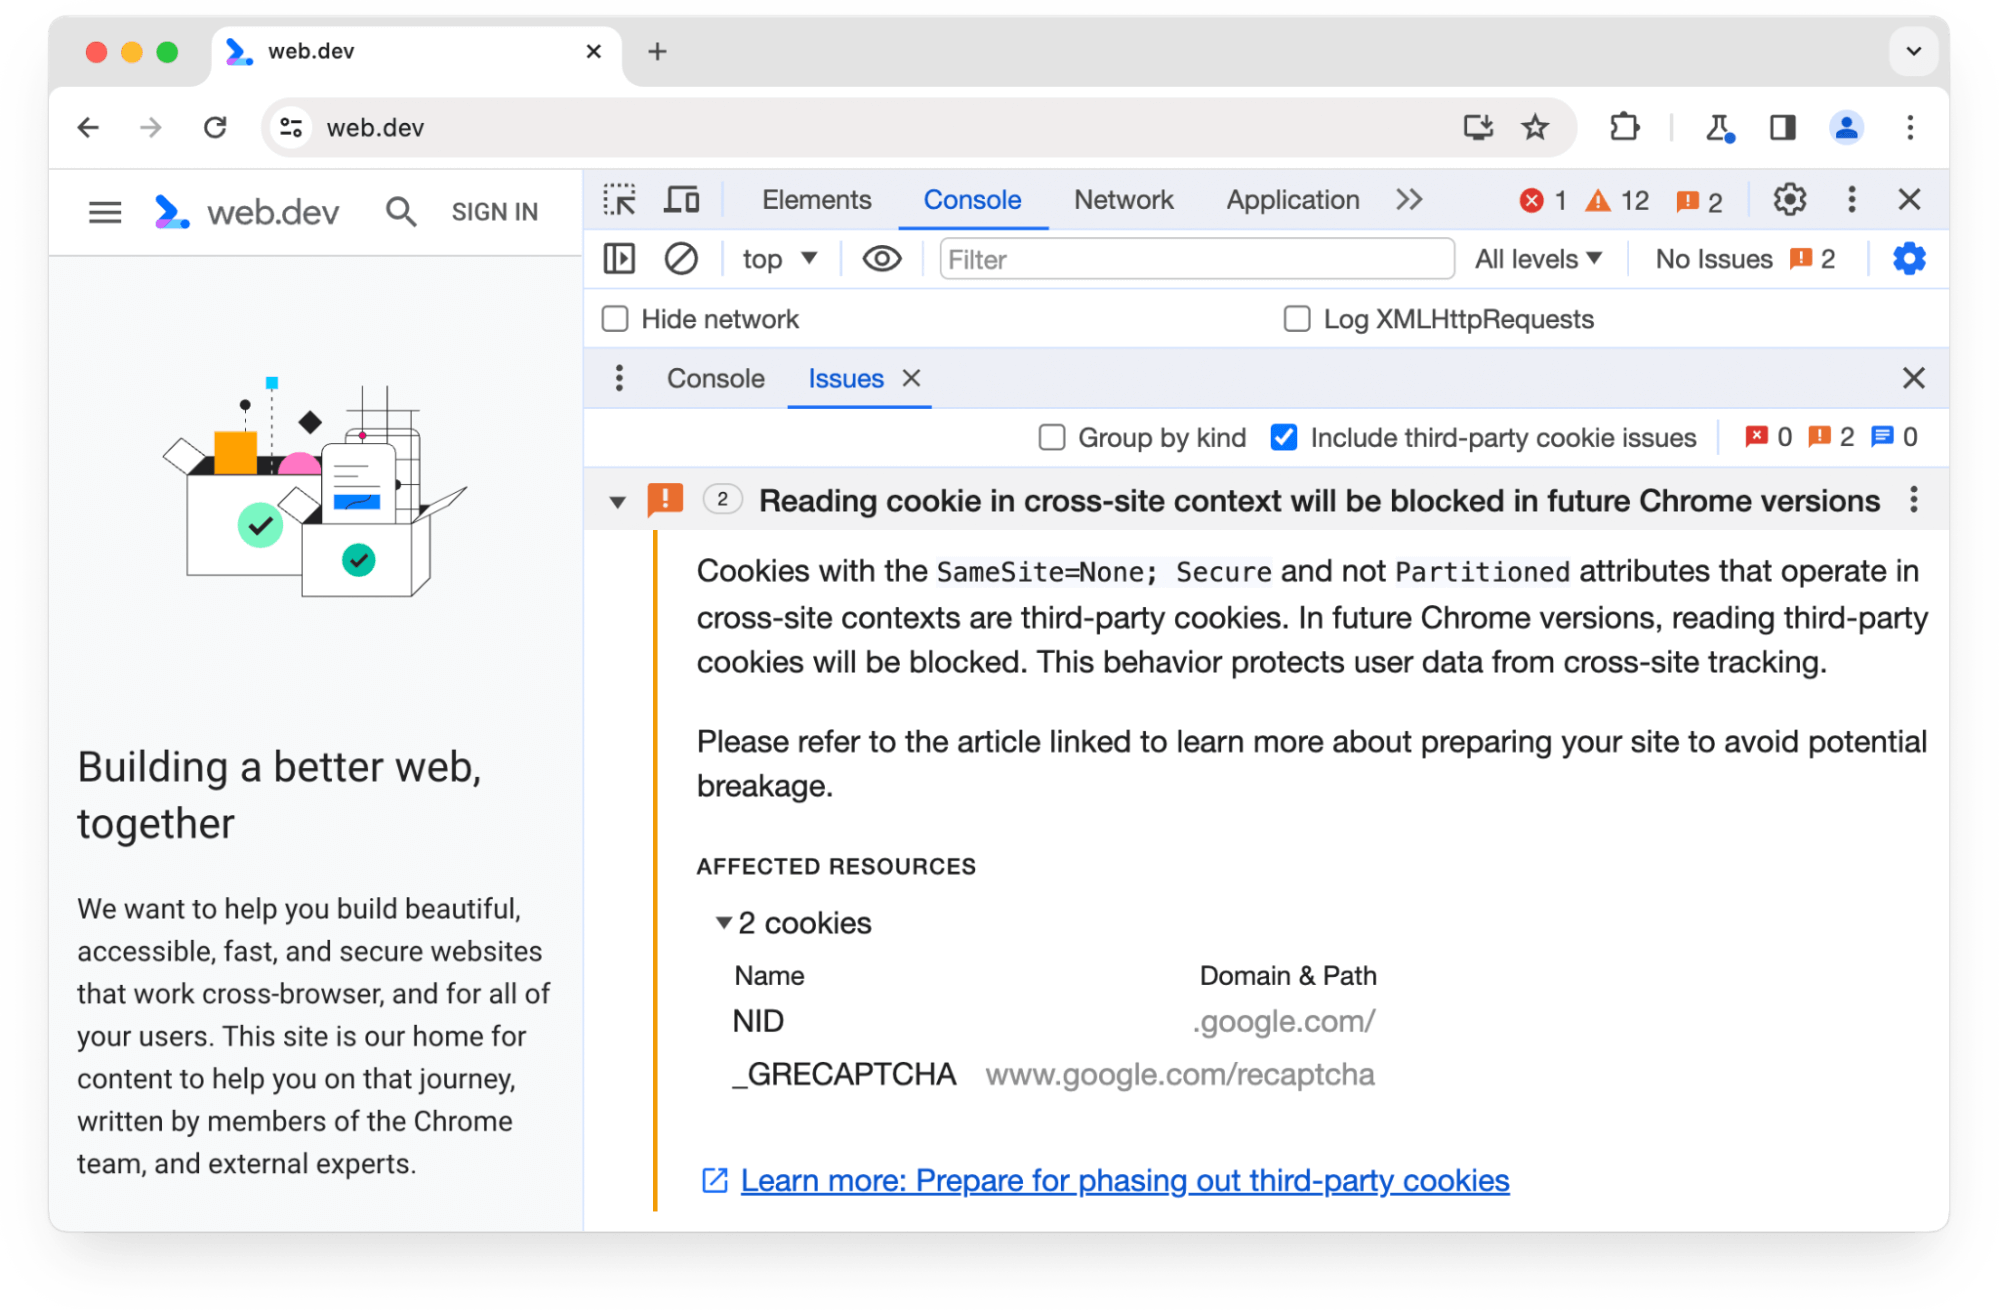 Aviso do painel &quot;Problemas&quot; do Chrome DevTools sobre dois cookies de terceiros que serão bloqueados em versões futuras do Chrome.